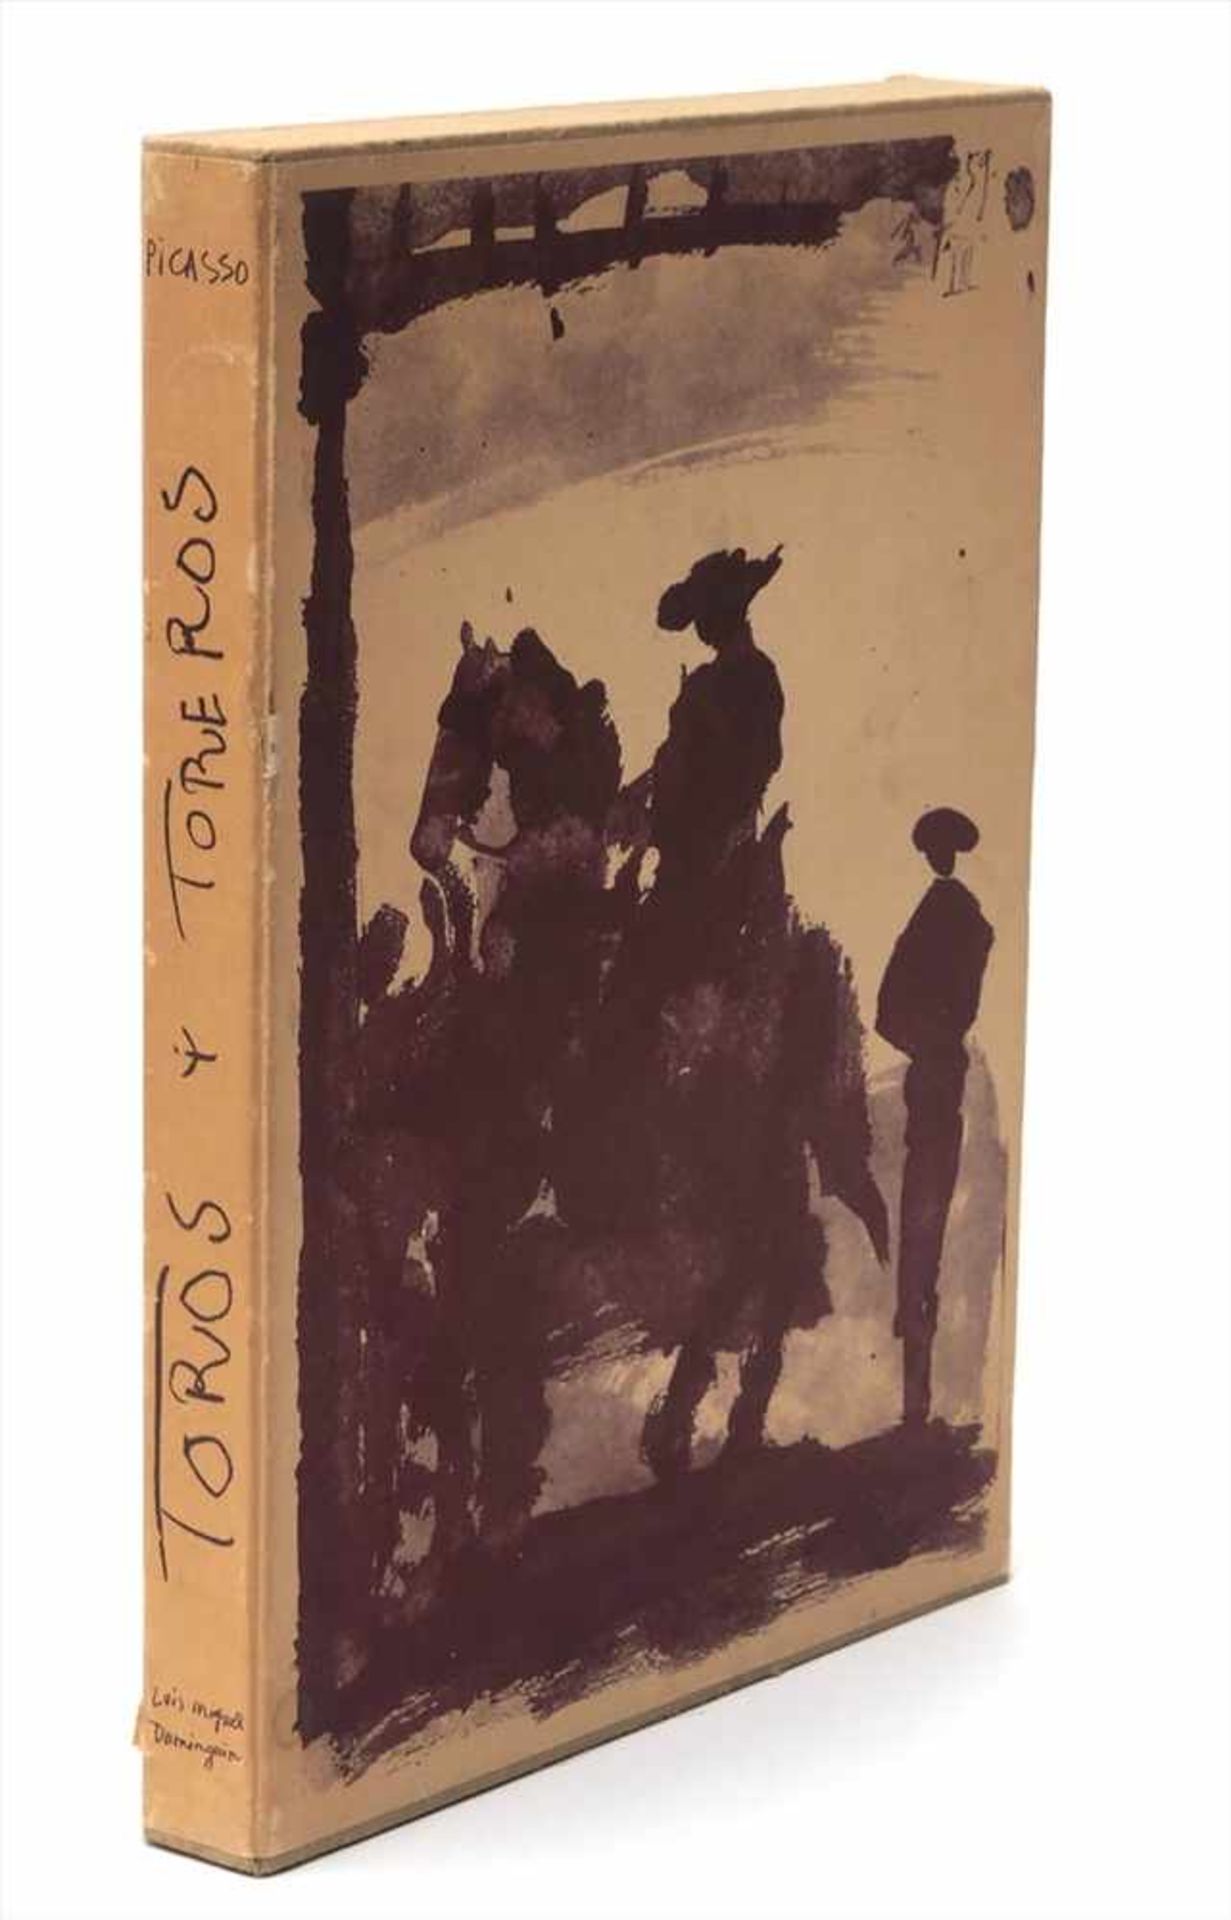 Picasso, Pablo, 1881 - 1973"Toros y toreros", Verlag Editions cercle d'art, Paris 1961. Im